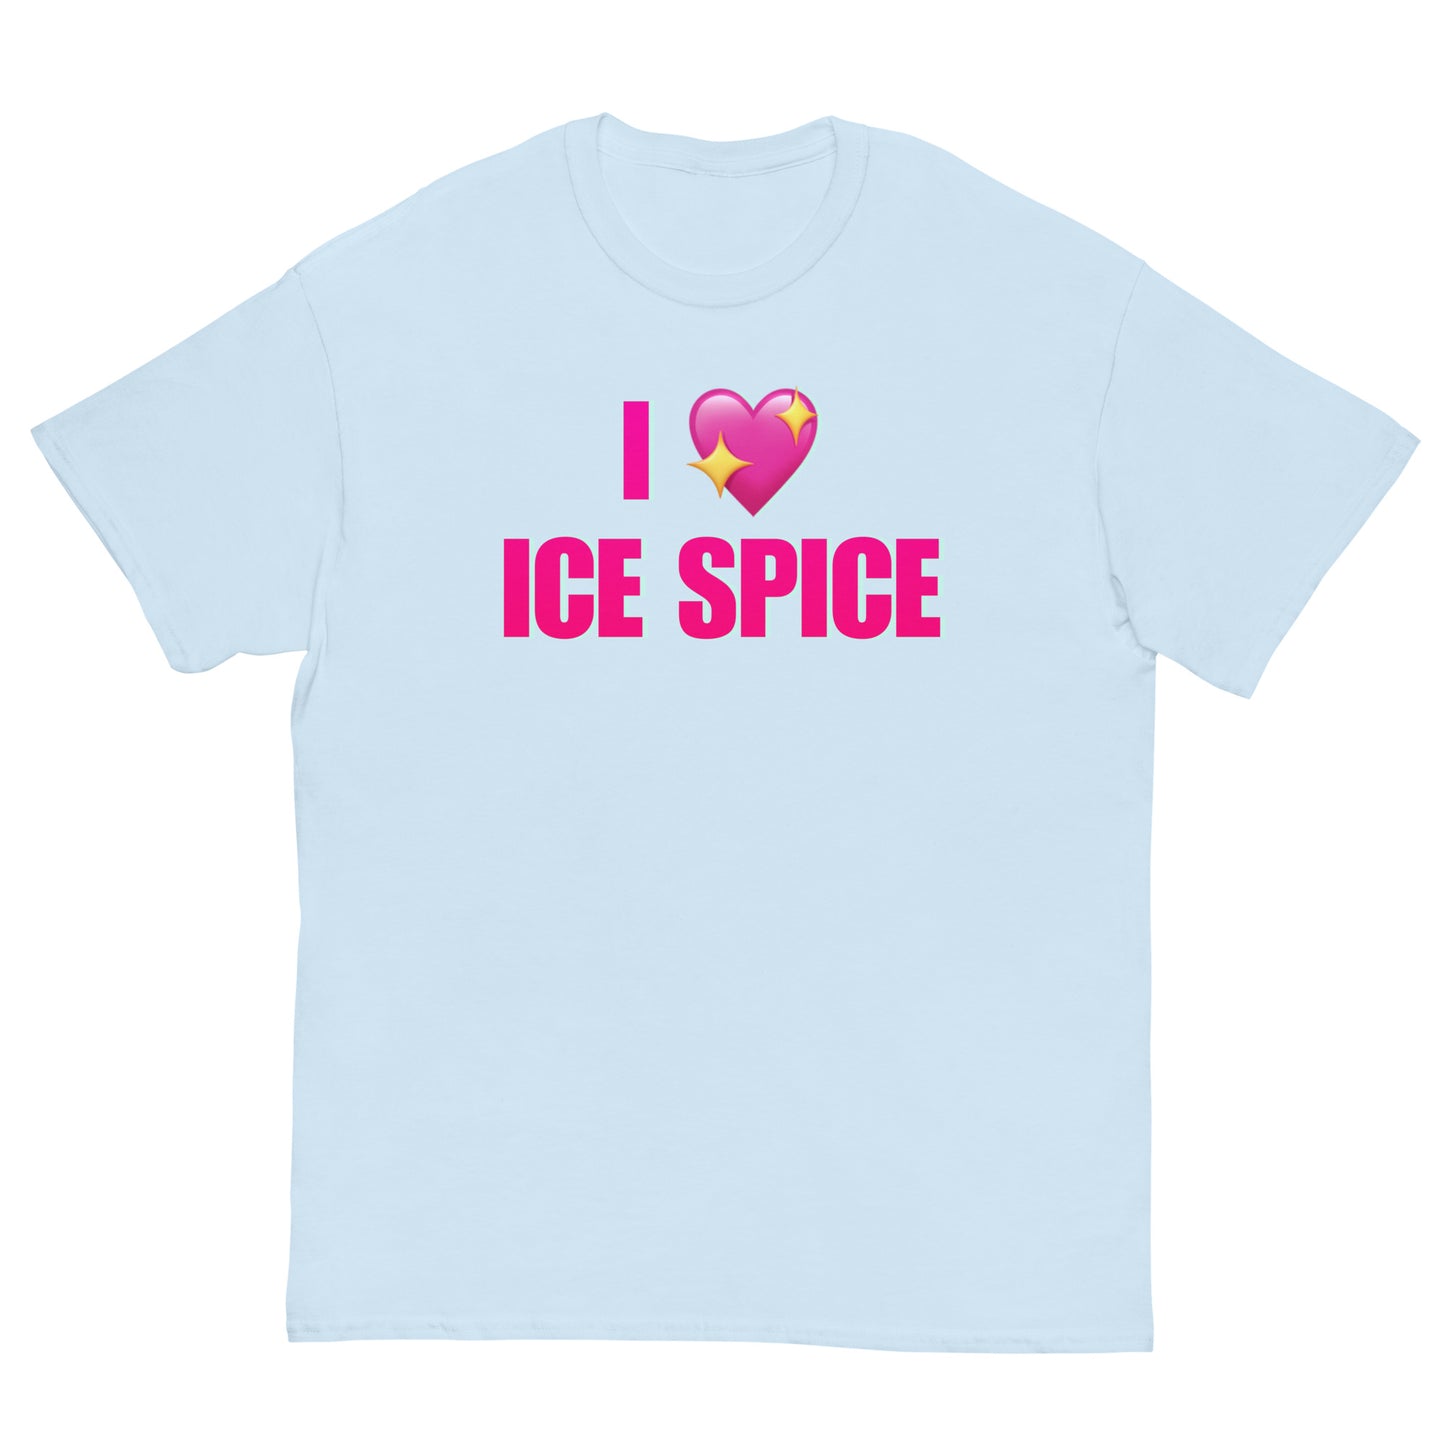 I love Ice Spice Cringey Tee